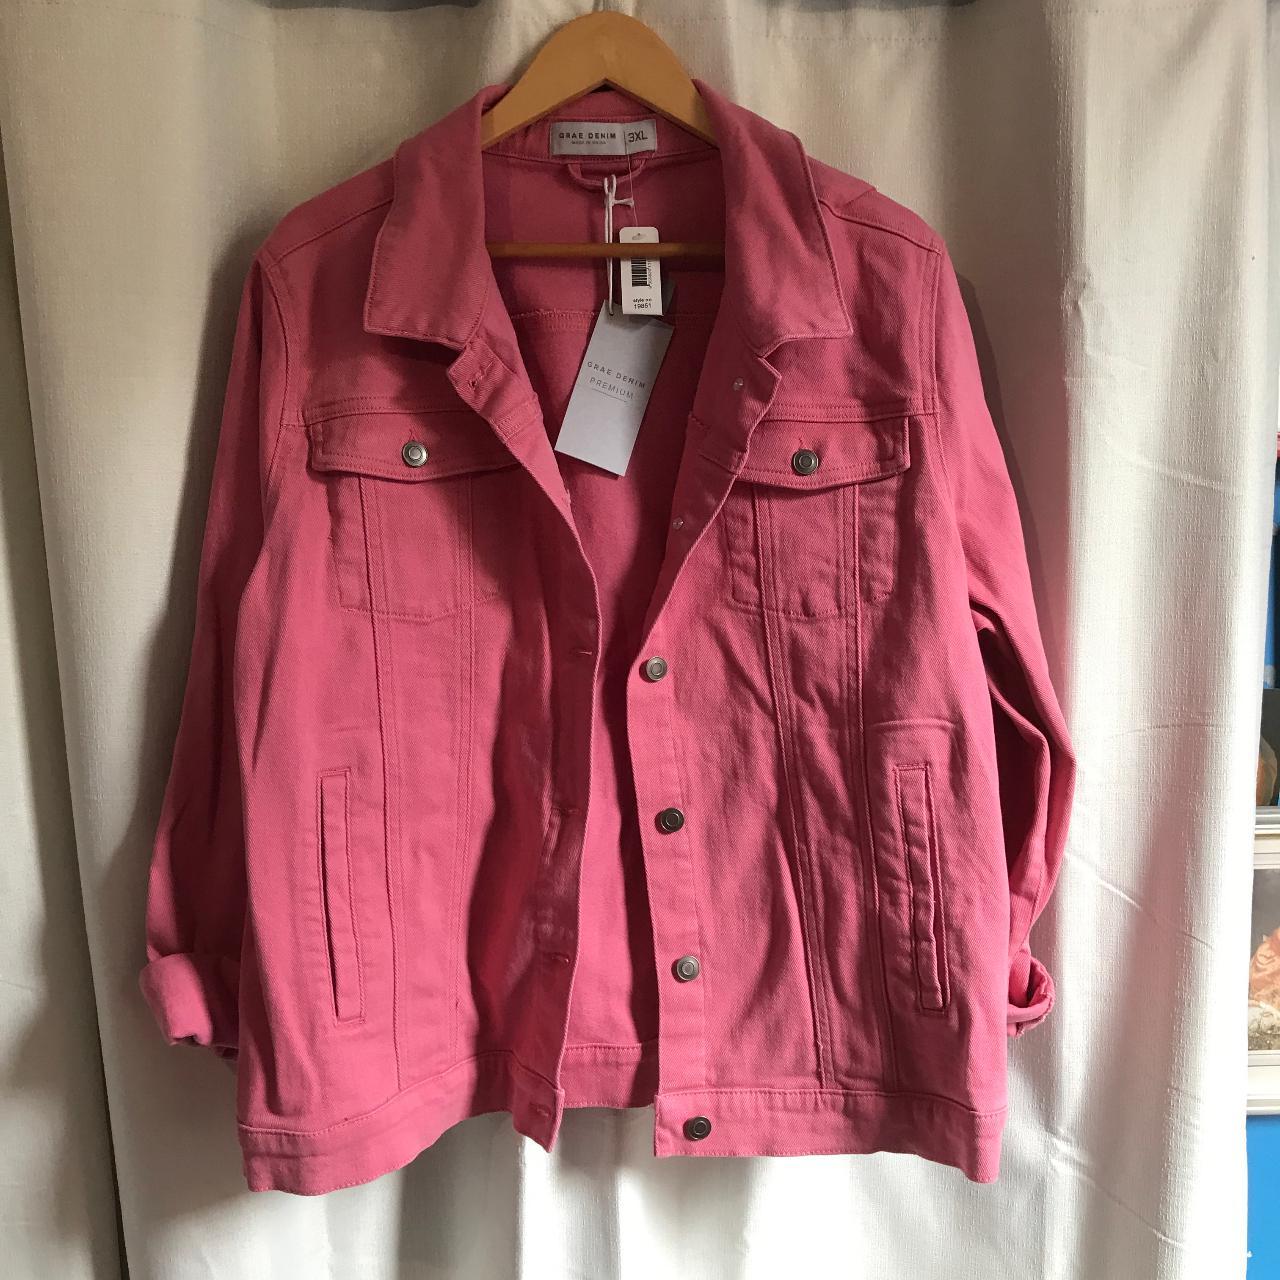 Suzanne Grae denim jacket pink size 3XL 99% cotton - Depop